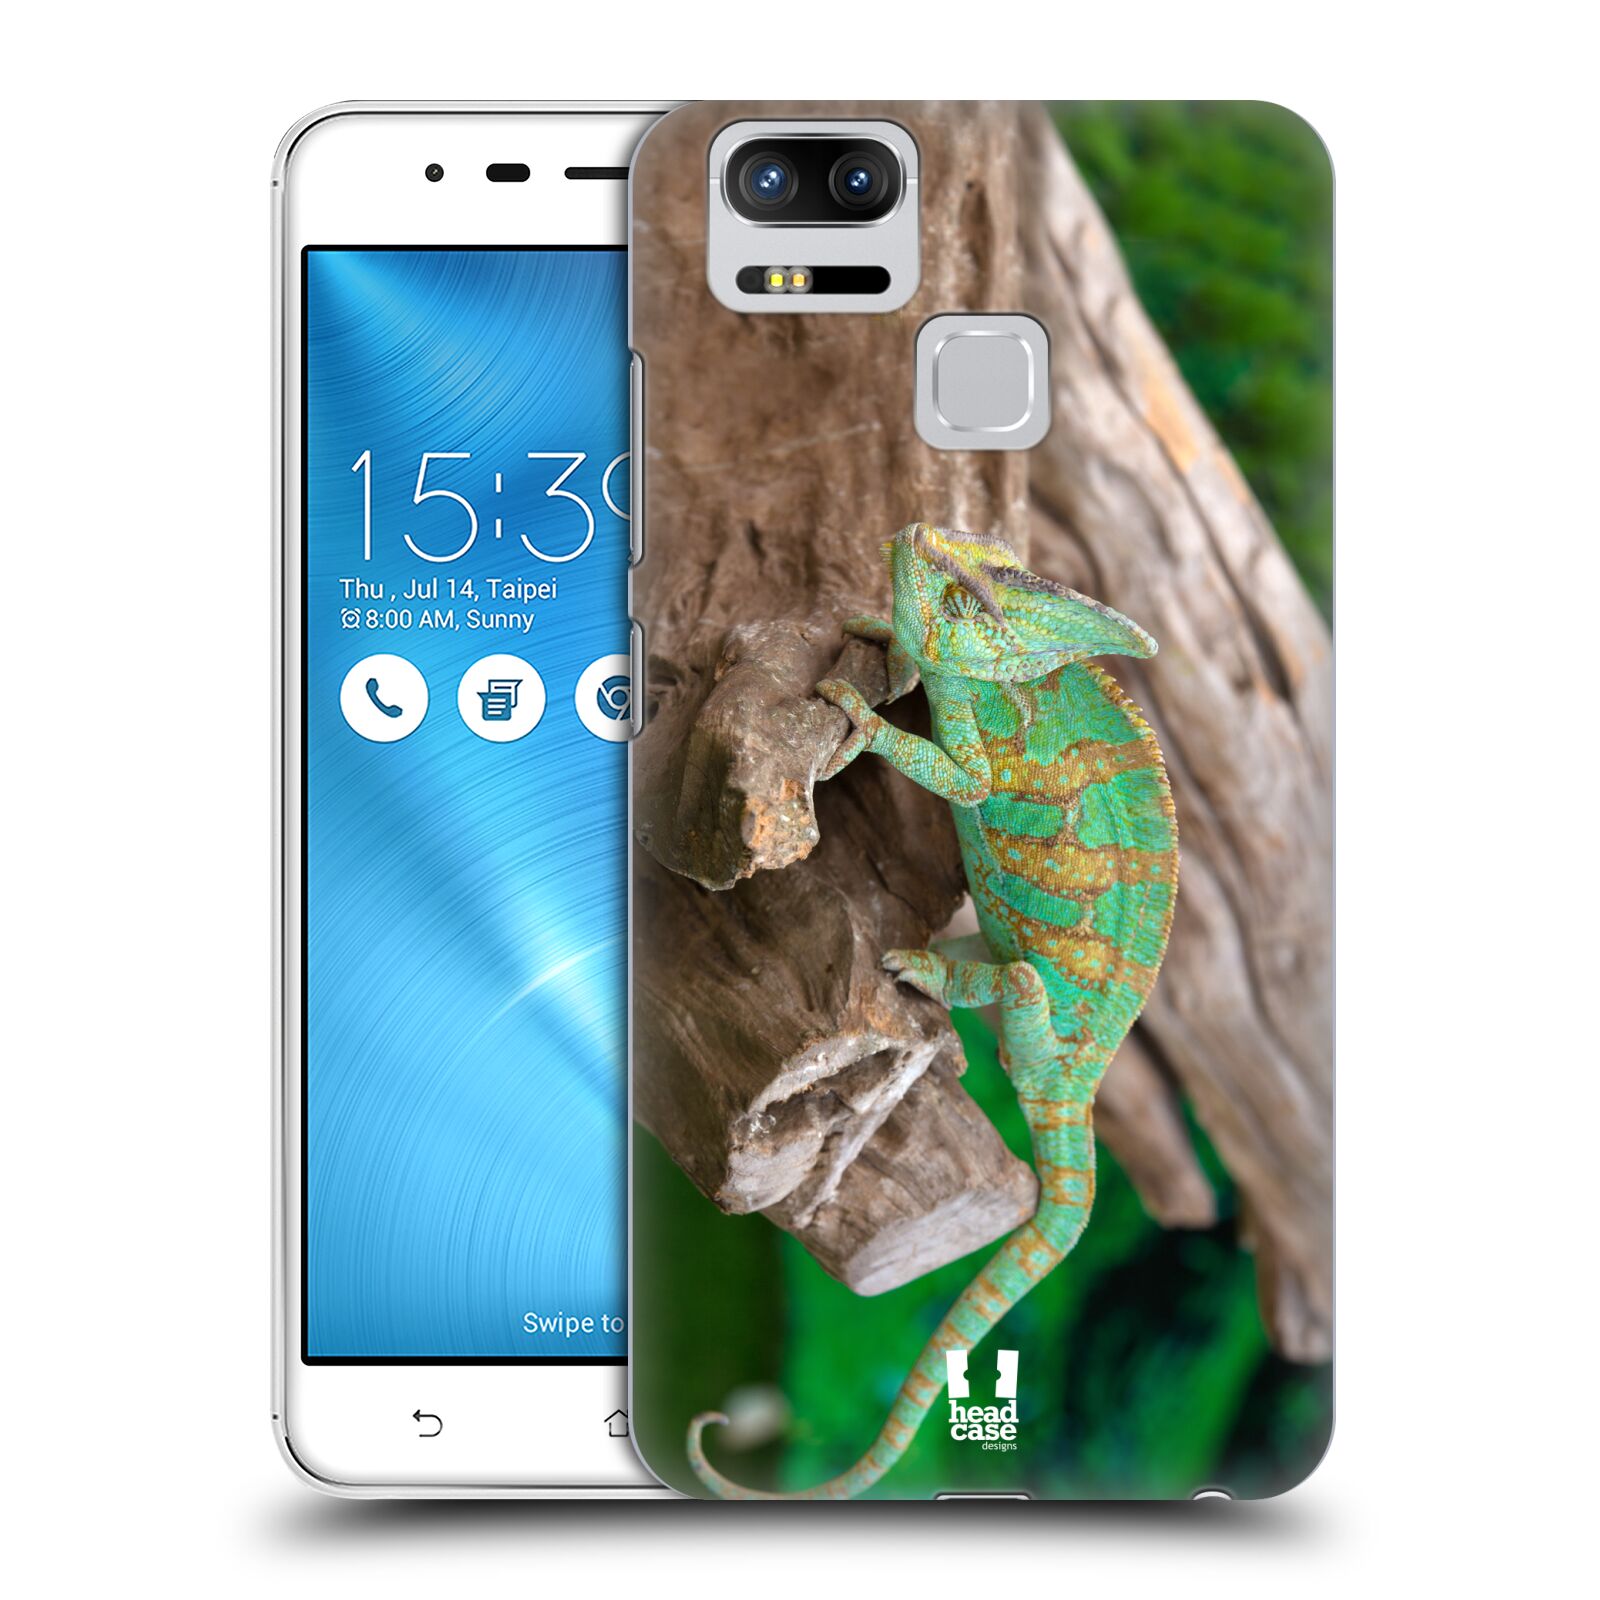 HEAD CASE plastový obal na mobil Asus Zenfone 3 Zoom ZE553KL vzor slavná zvířata foto chameleon